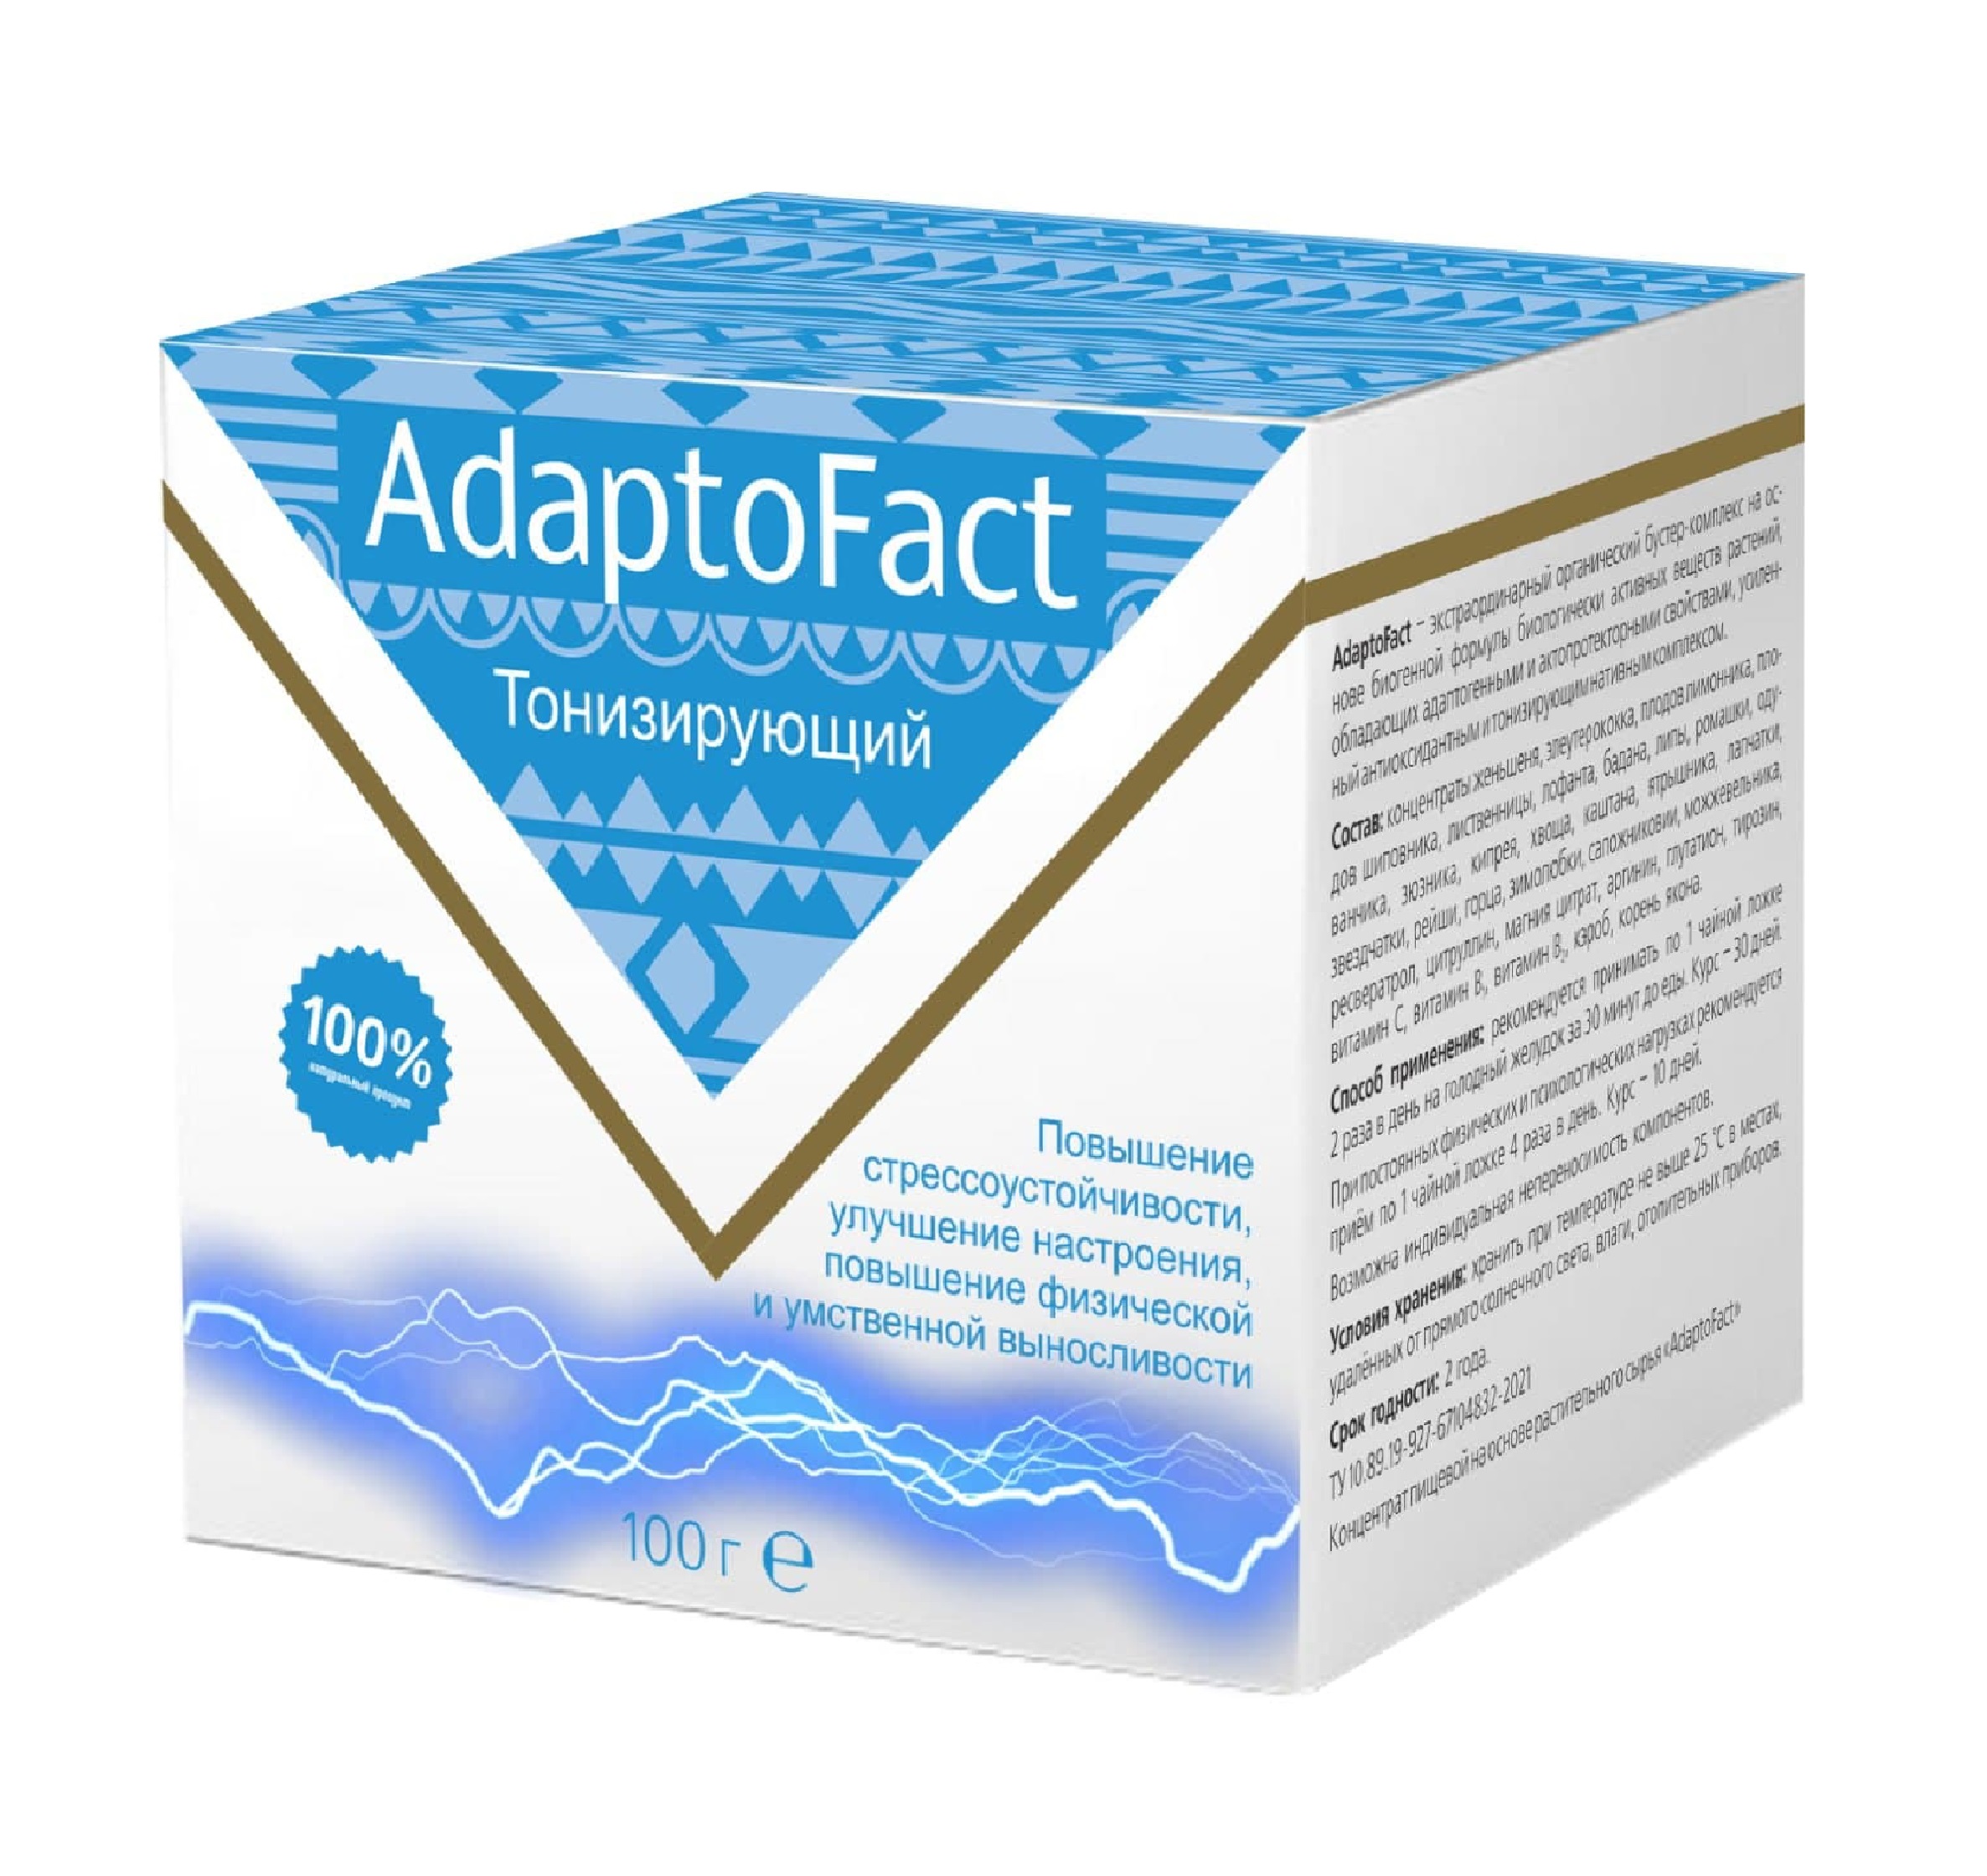 AdaptoFact